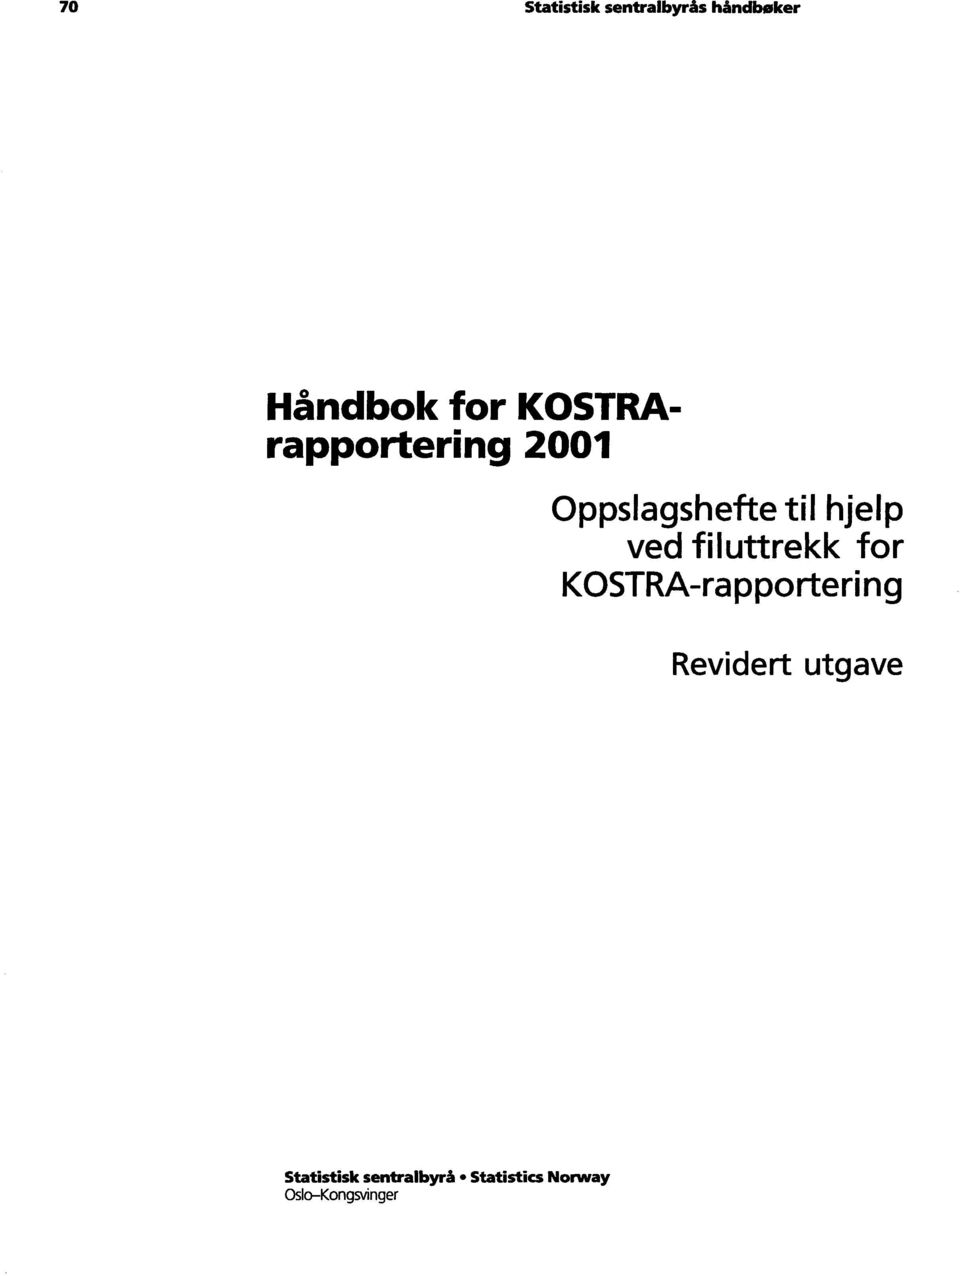 filuttrekk for KOSTRA-rapportering Revidert utgave